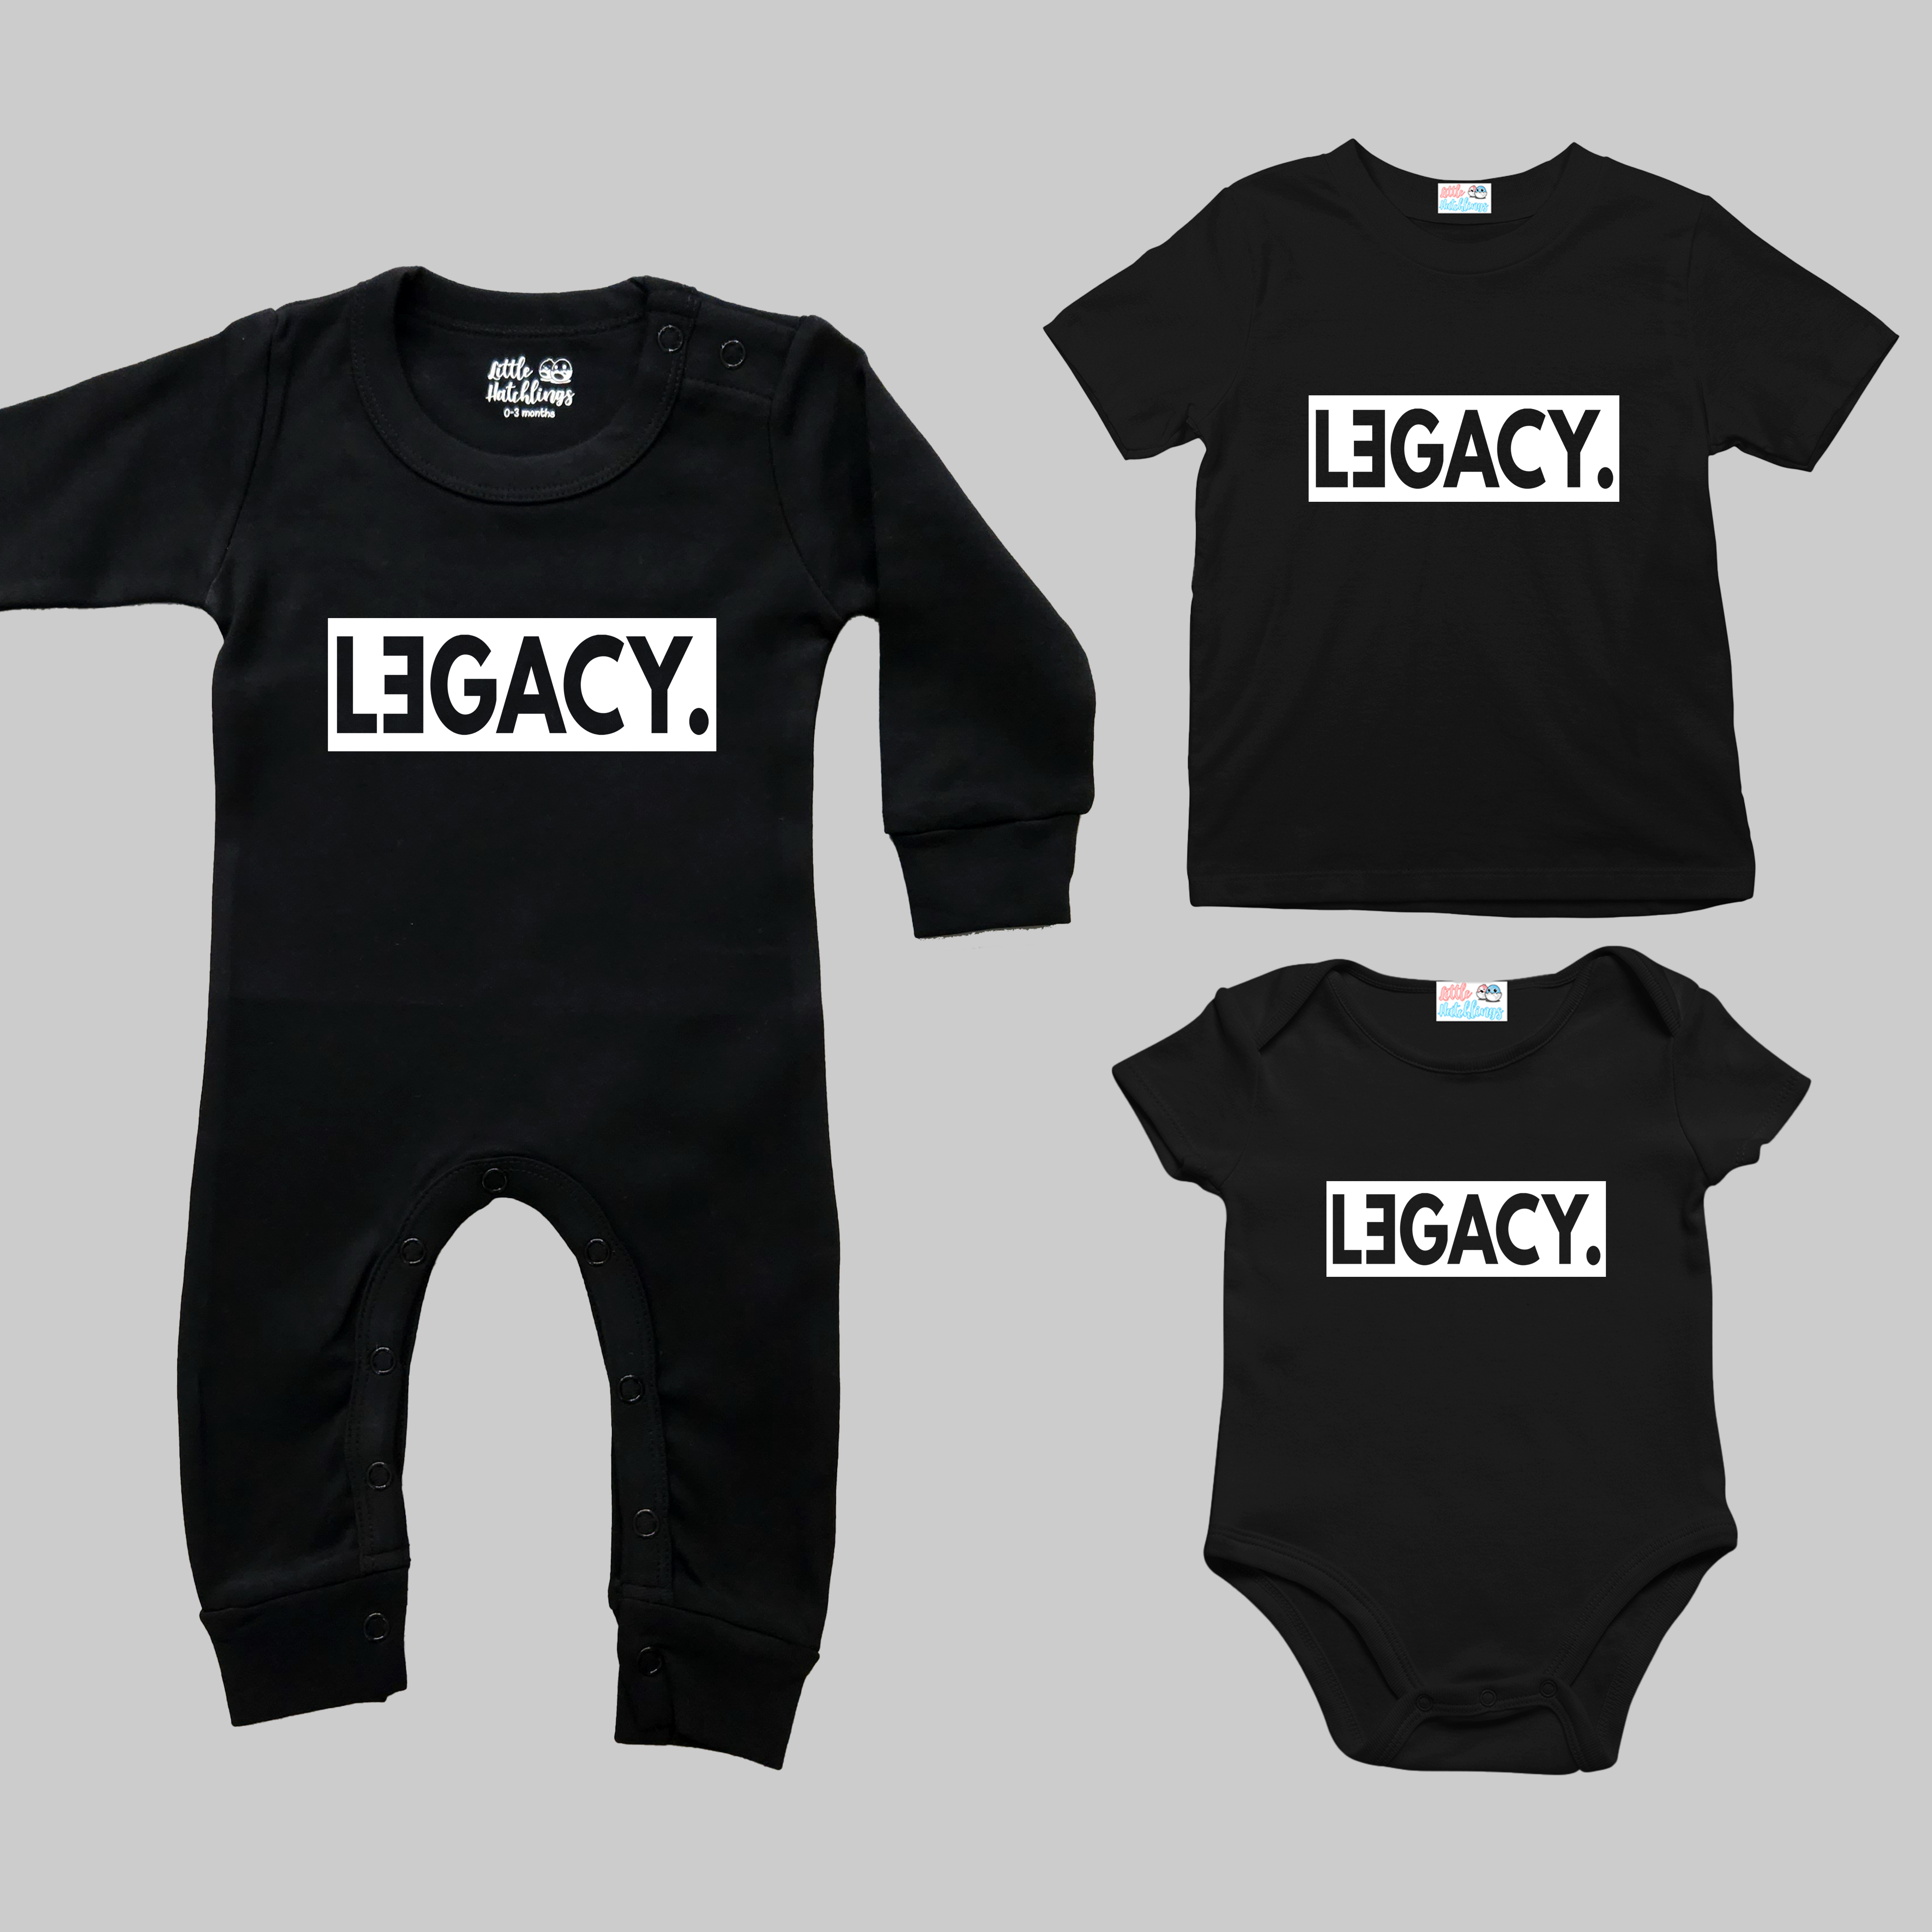 Legend Legacy Black Combo - Adult Tshirt + Kids Tshirt